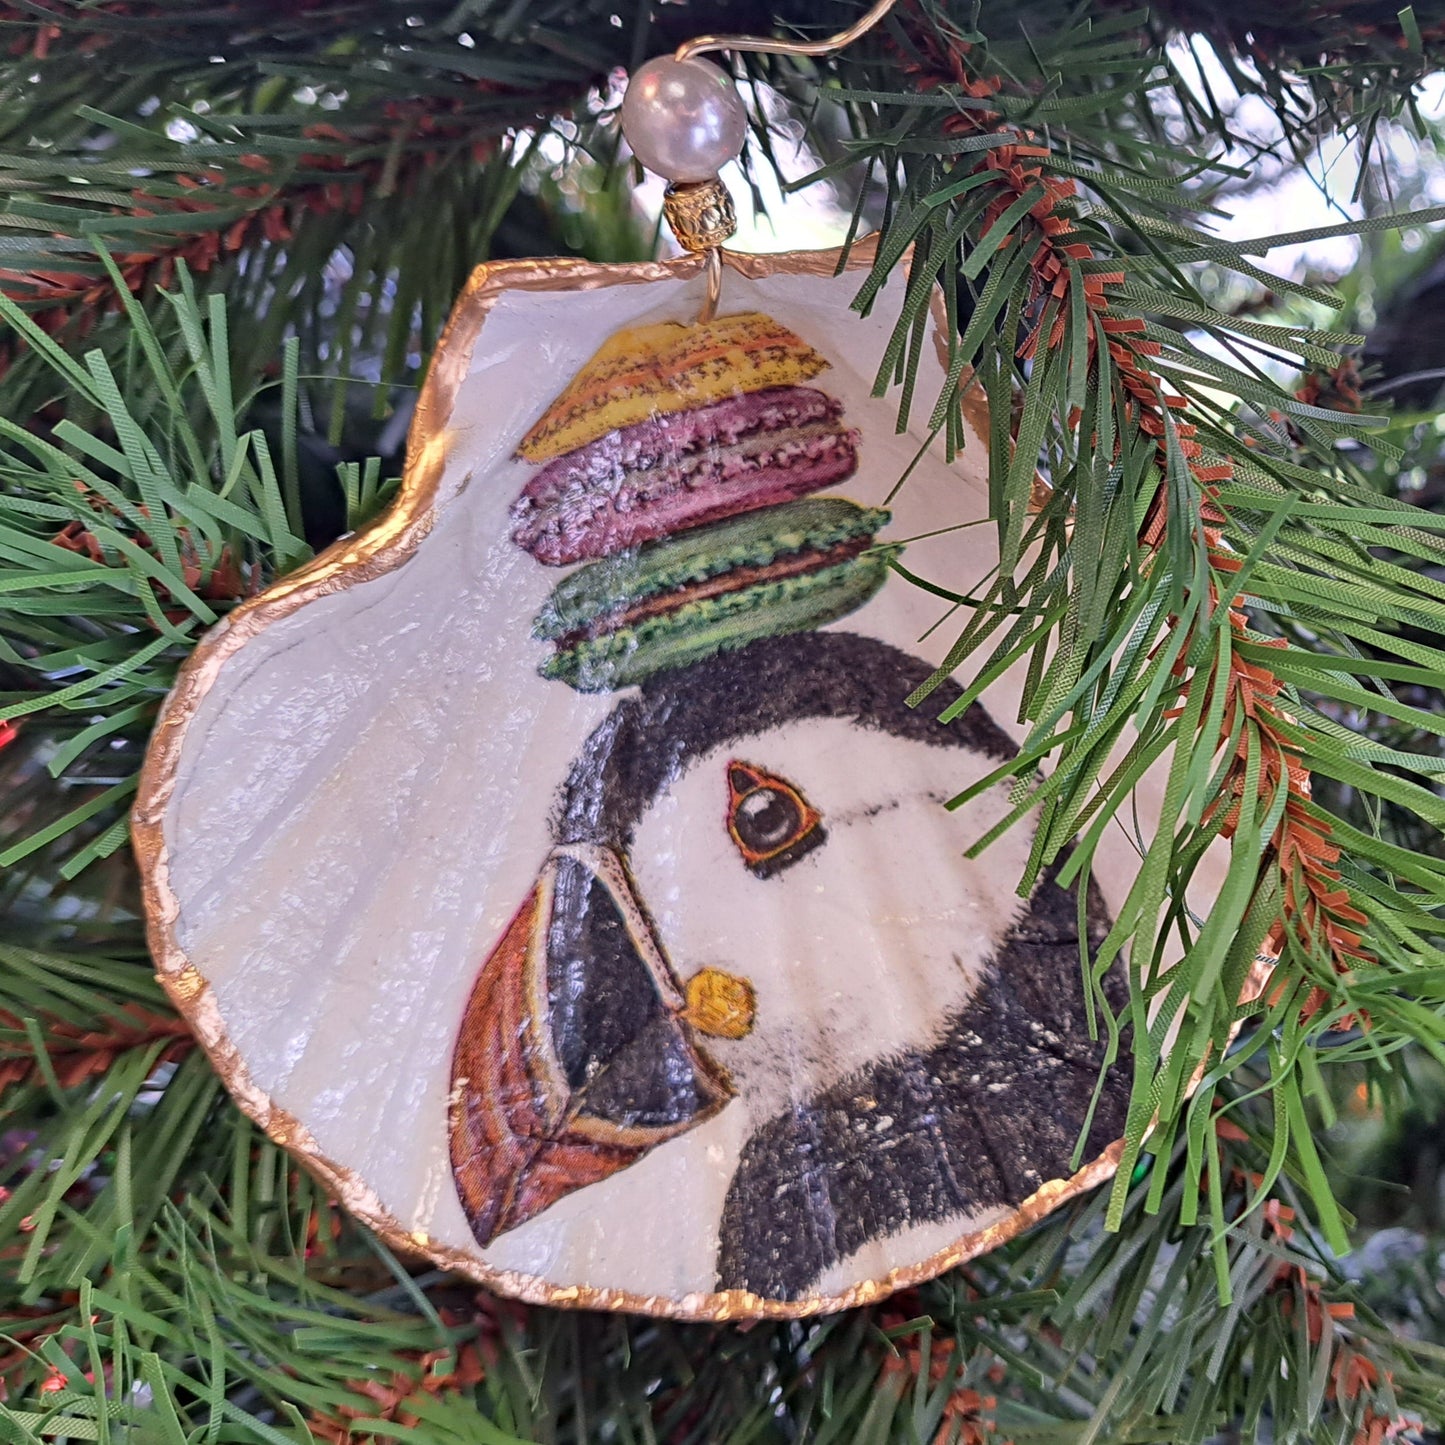 Scallop Shell Ornament